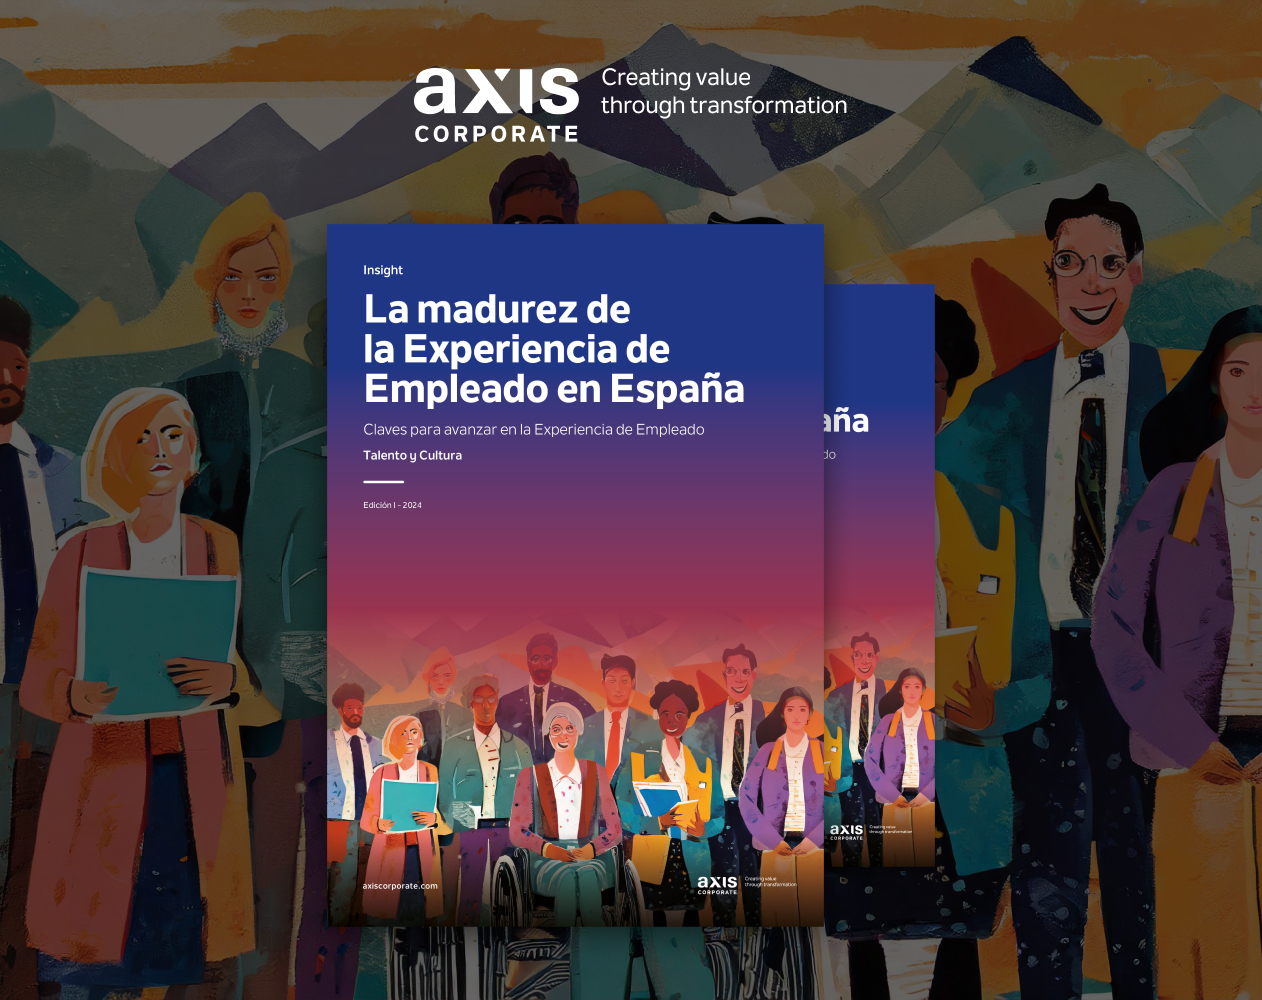 1ª Edición del Insight de Experiencia de Empleado - Axis Corporate